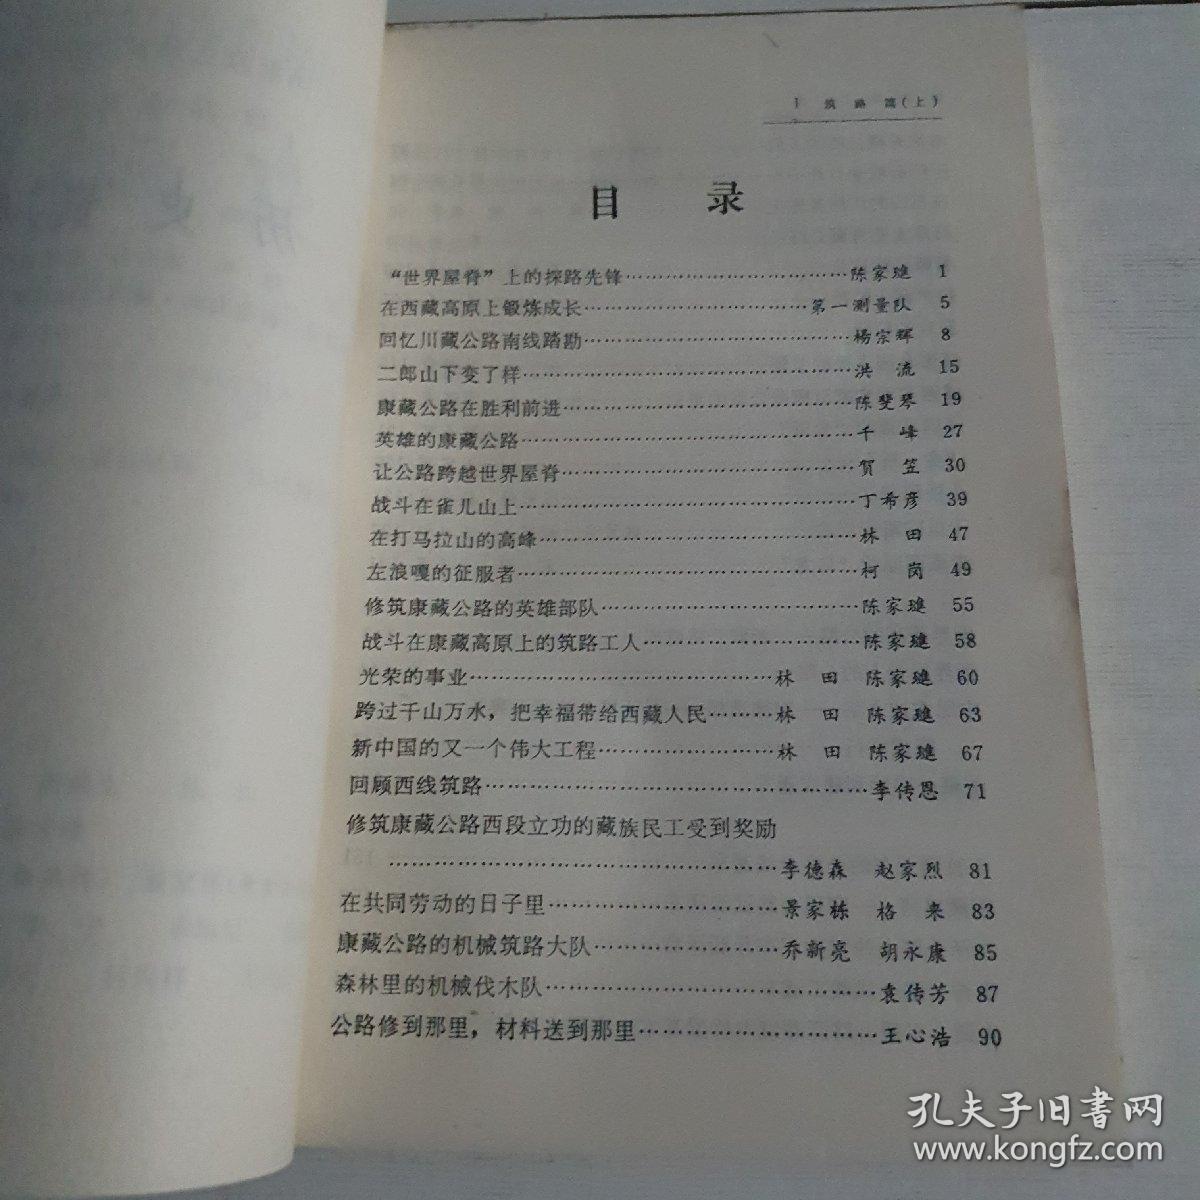 纪念川藏青藏公路通车三十周年 文献集 第二卷筑路篇（上）